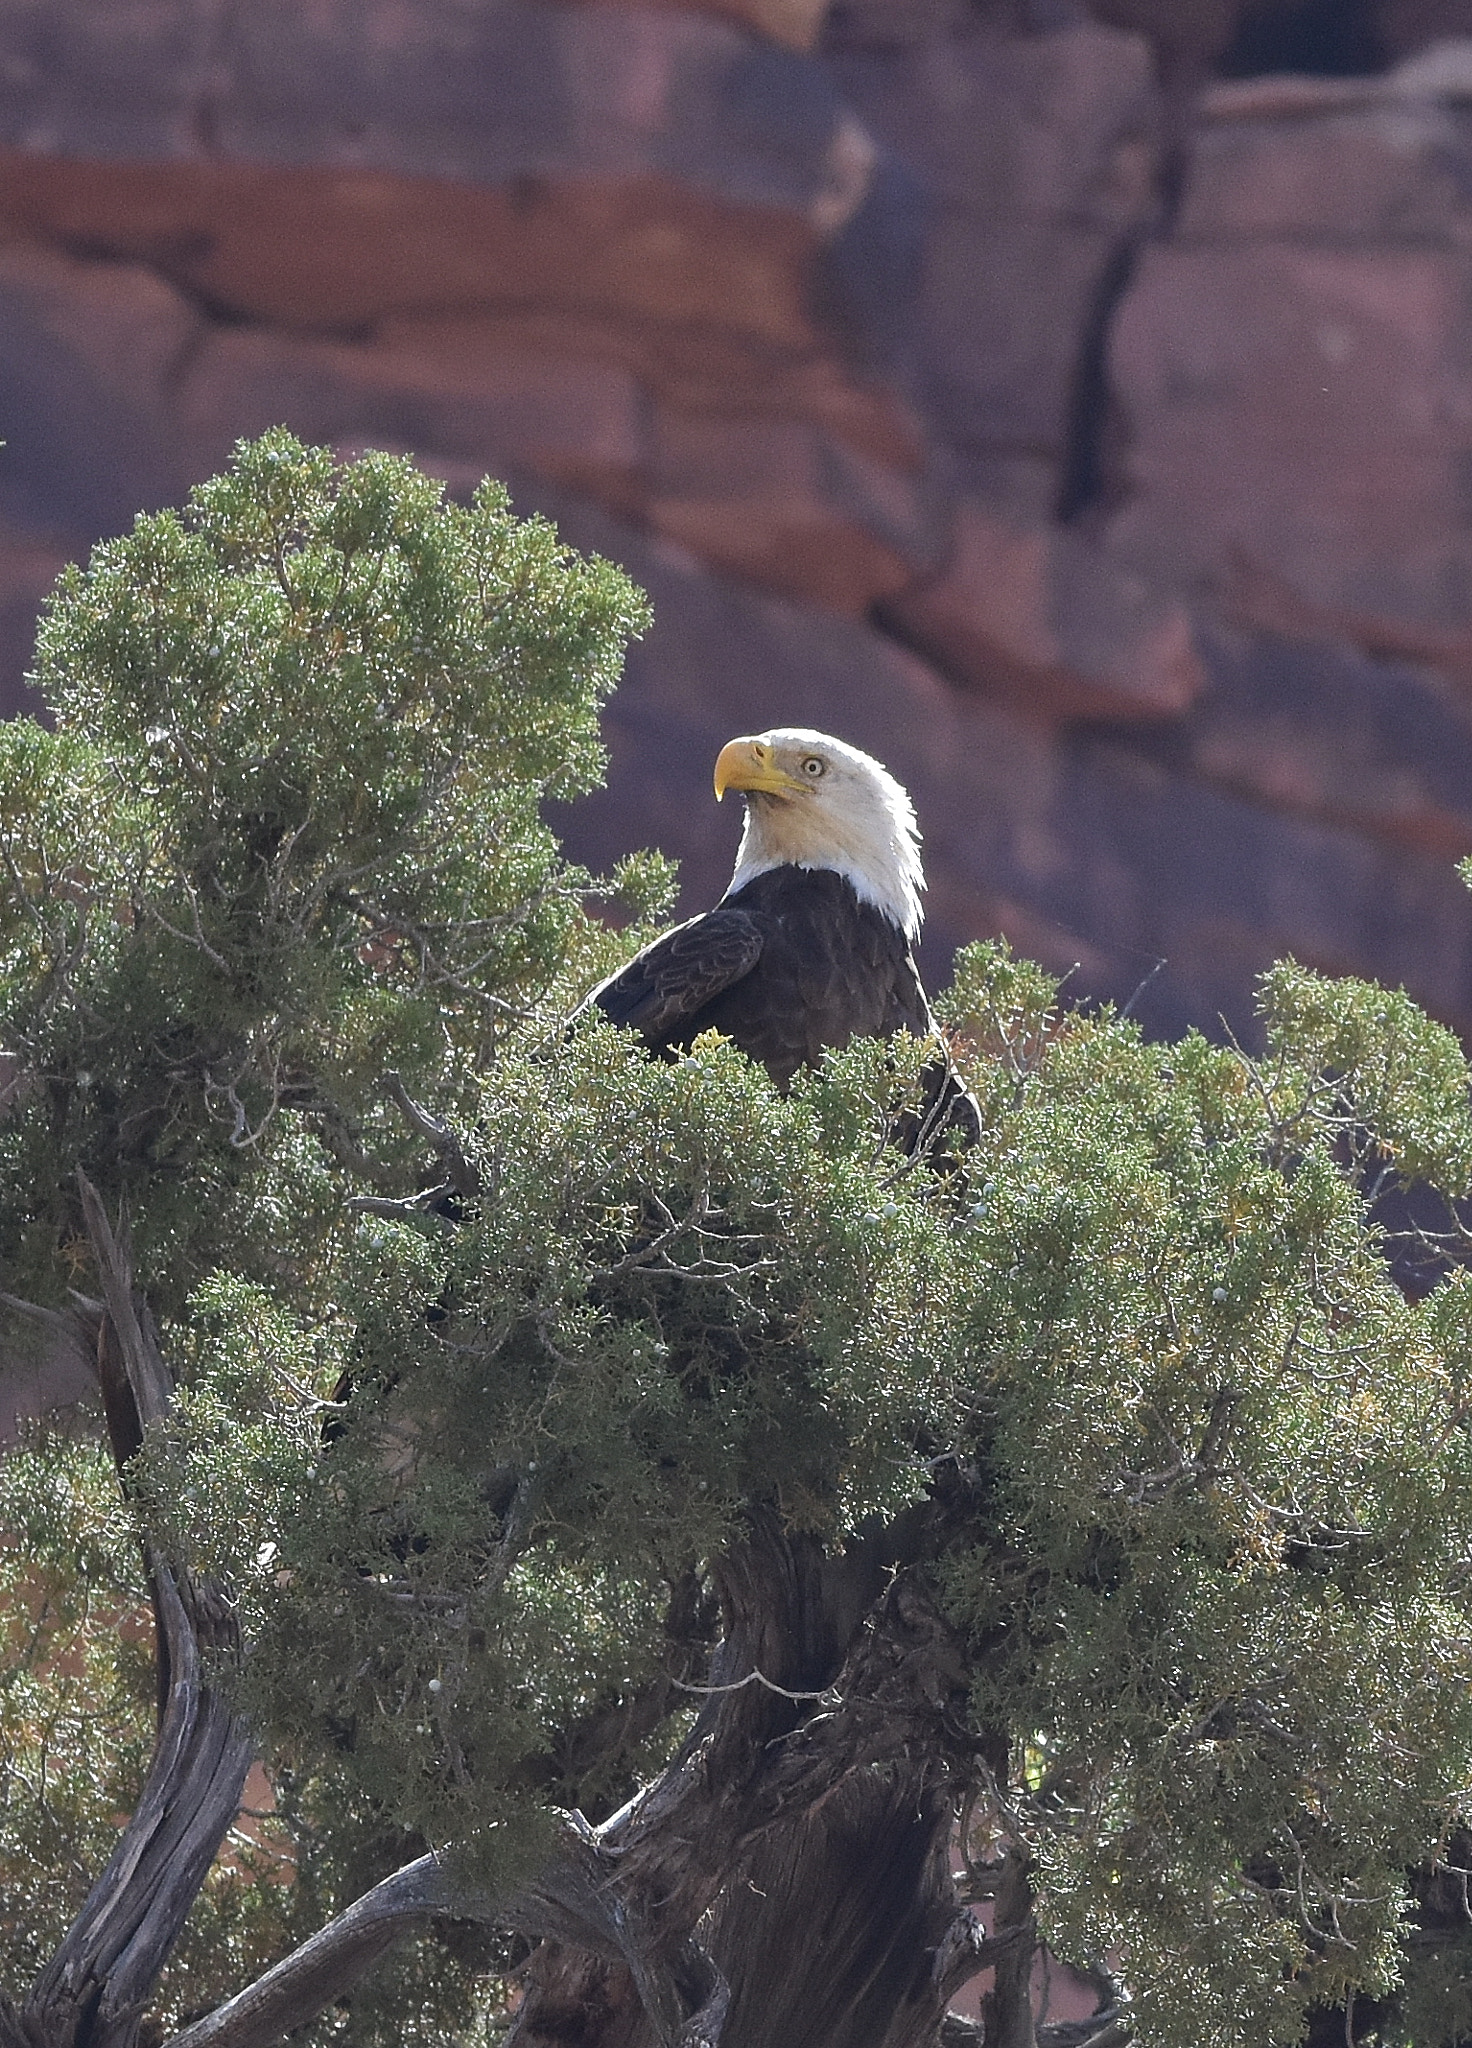 Nikon AF-S Nikkor 70-200mm F4G ED VR sample photo. Bald eagle holding forth from a juniper photography